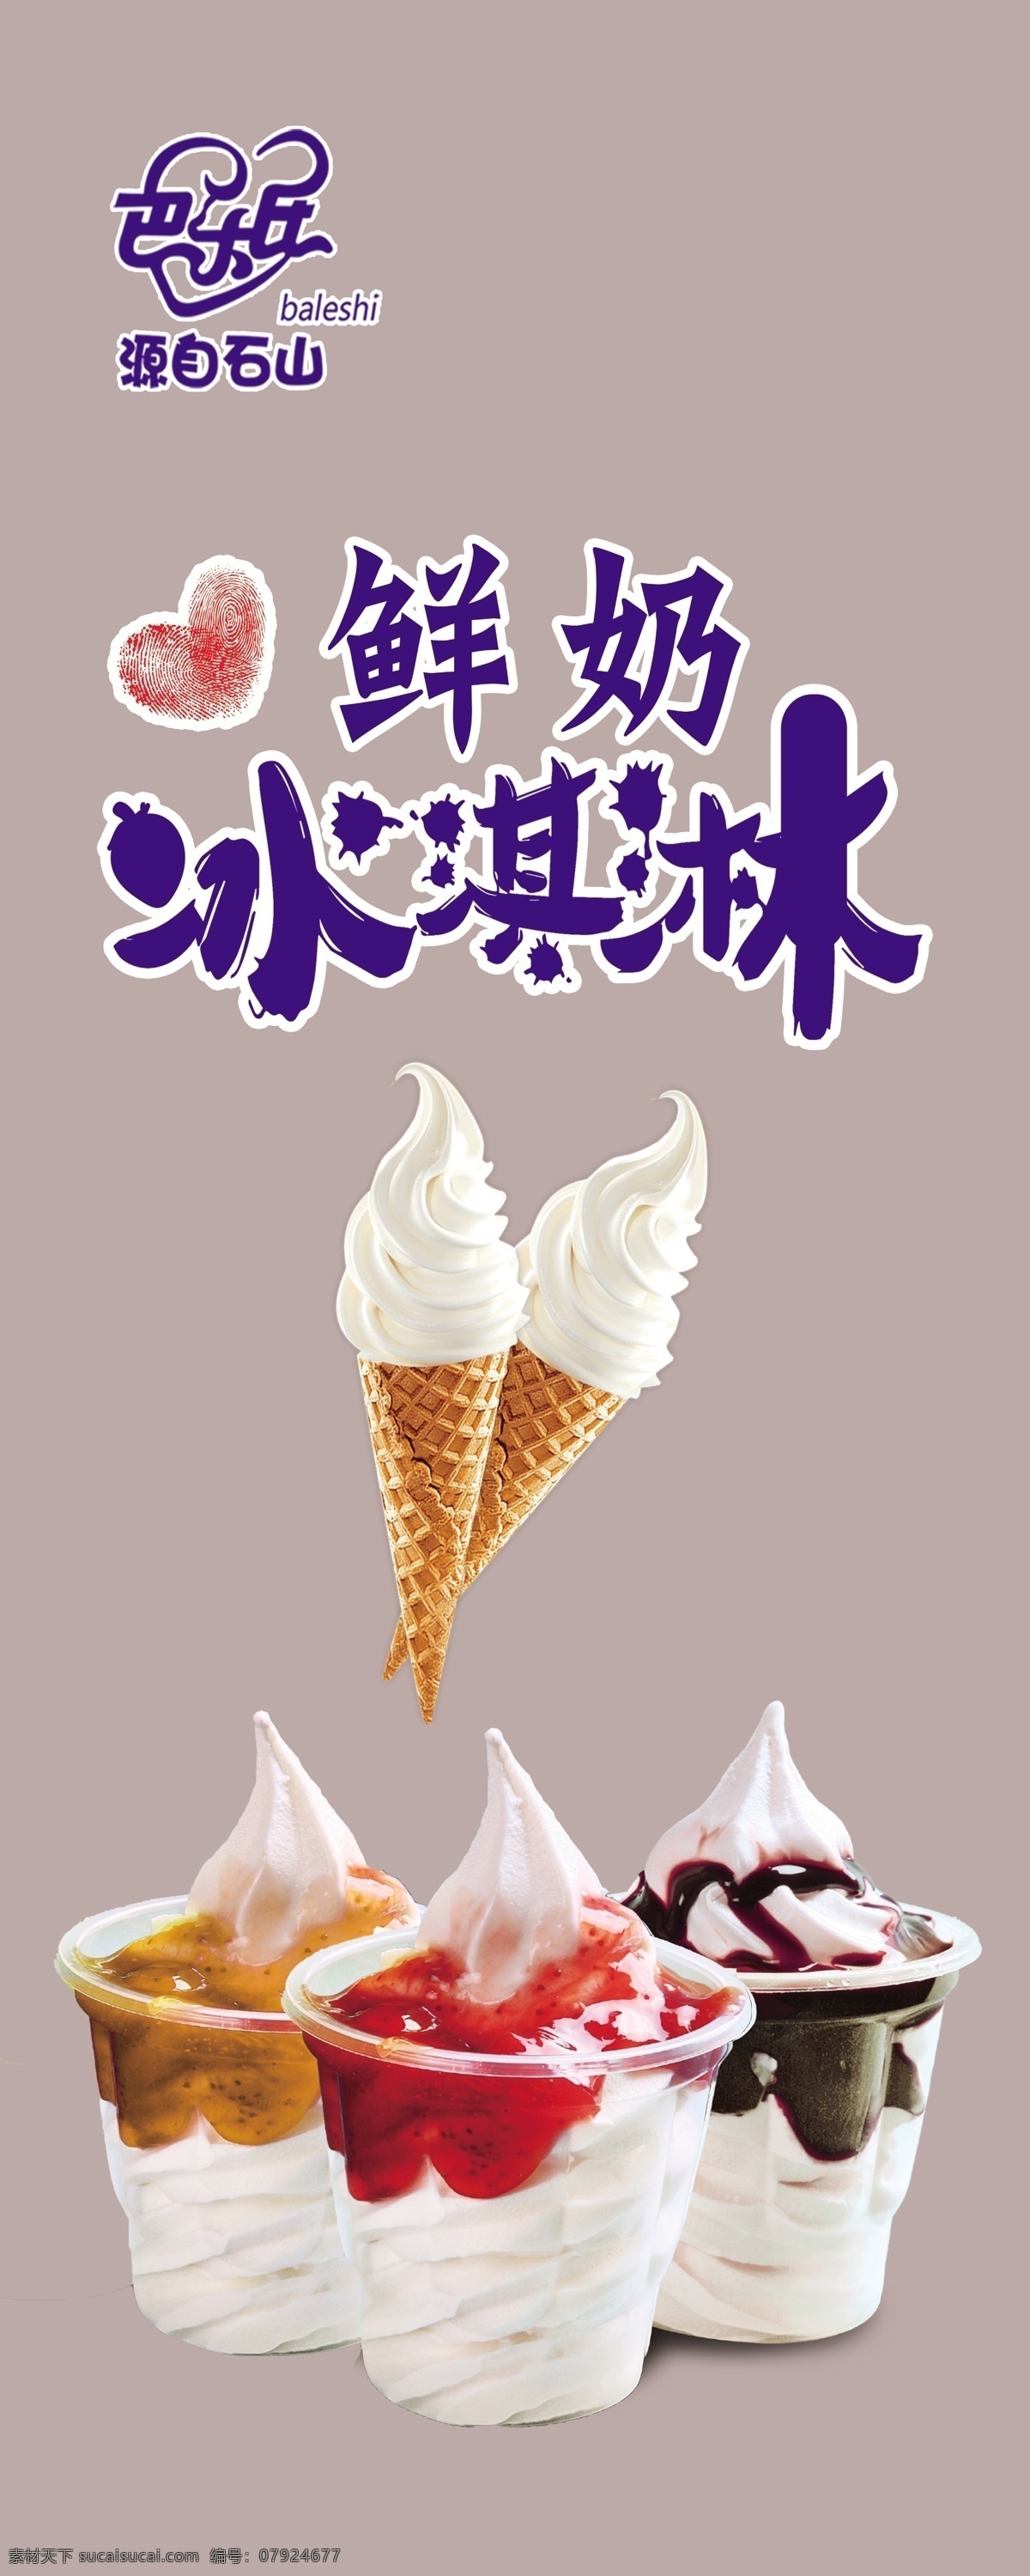 鲜奶冰淇凌 蛋卷 冰淇凌 文字 背景 蓝色 室内广告设计